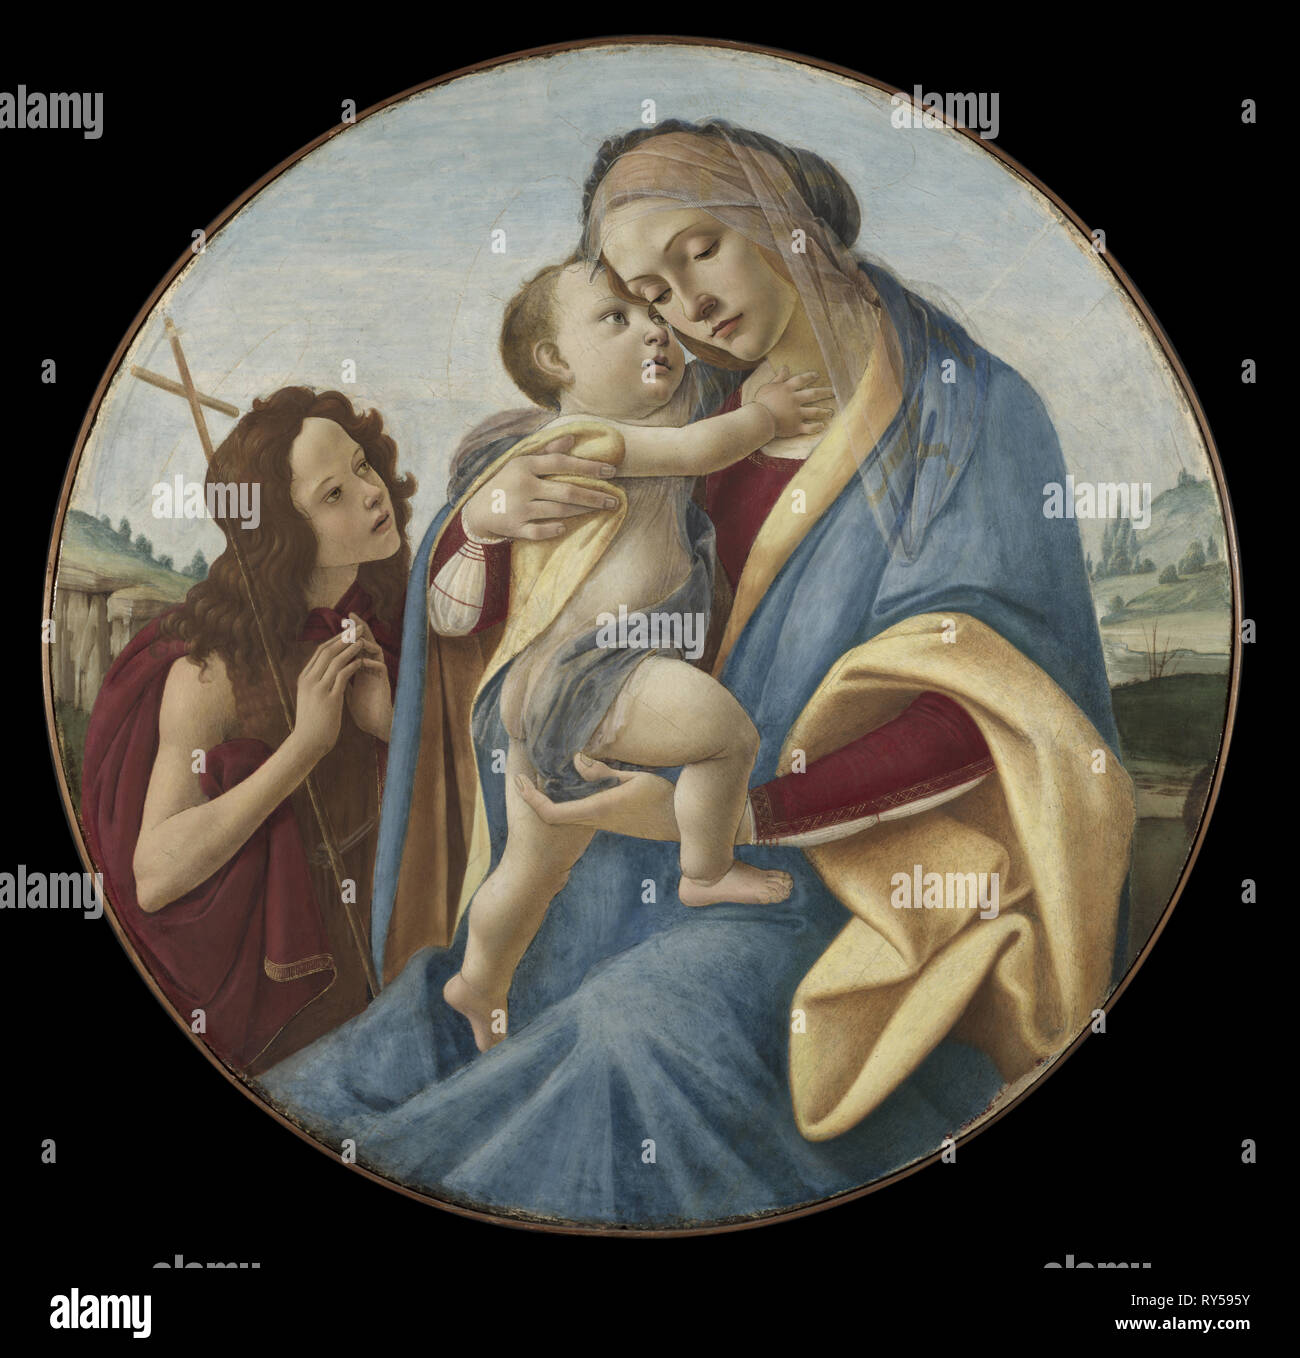 Vierge à l'enfant avec le jeune Saint Jean-Baptiste, c. 1490. Sandro Botticelli (Italien, 1444/45-1510), et de l'atelier. Tempera et huile sur bois ; produits : 115 x 12,5 cm (45 1/4 x 4 15/16 in.), diamètre : 68 cm (26 3/4 in Banque D'Images